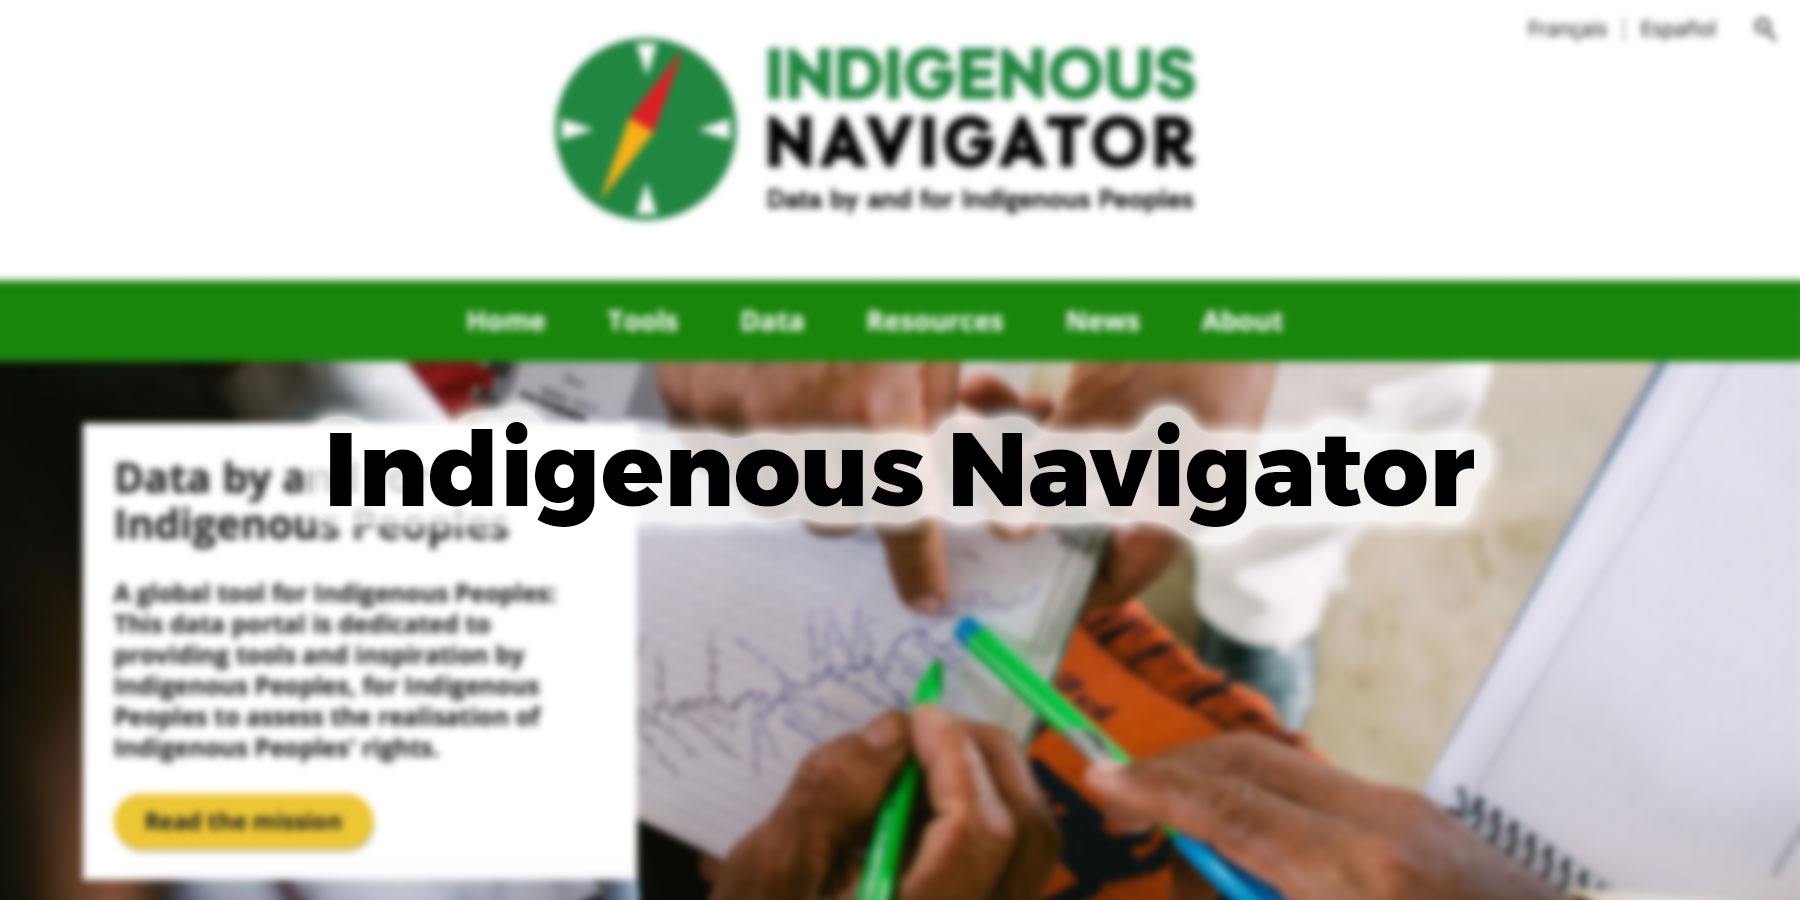 Indigenous Navigator